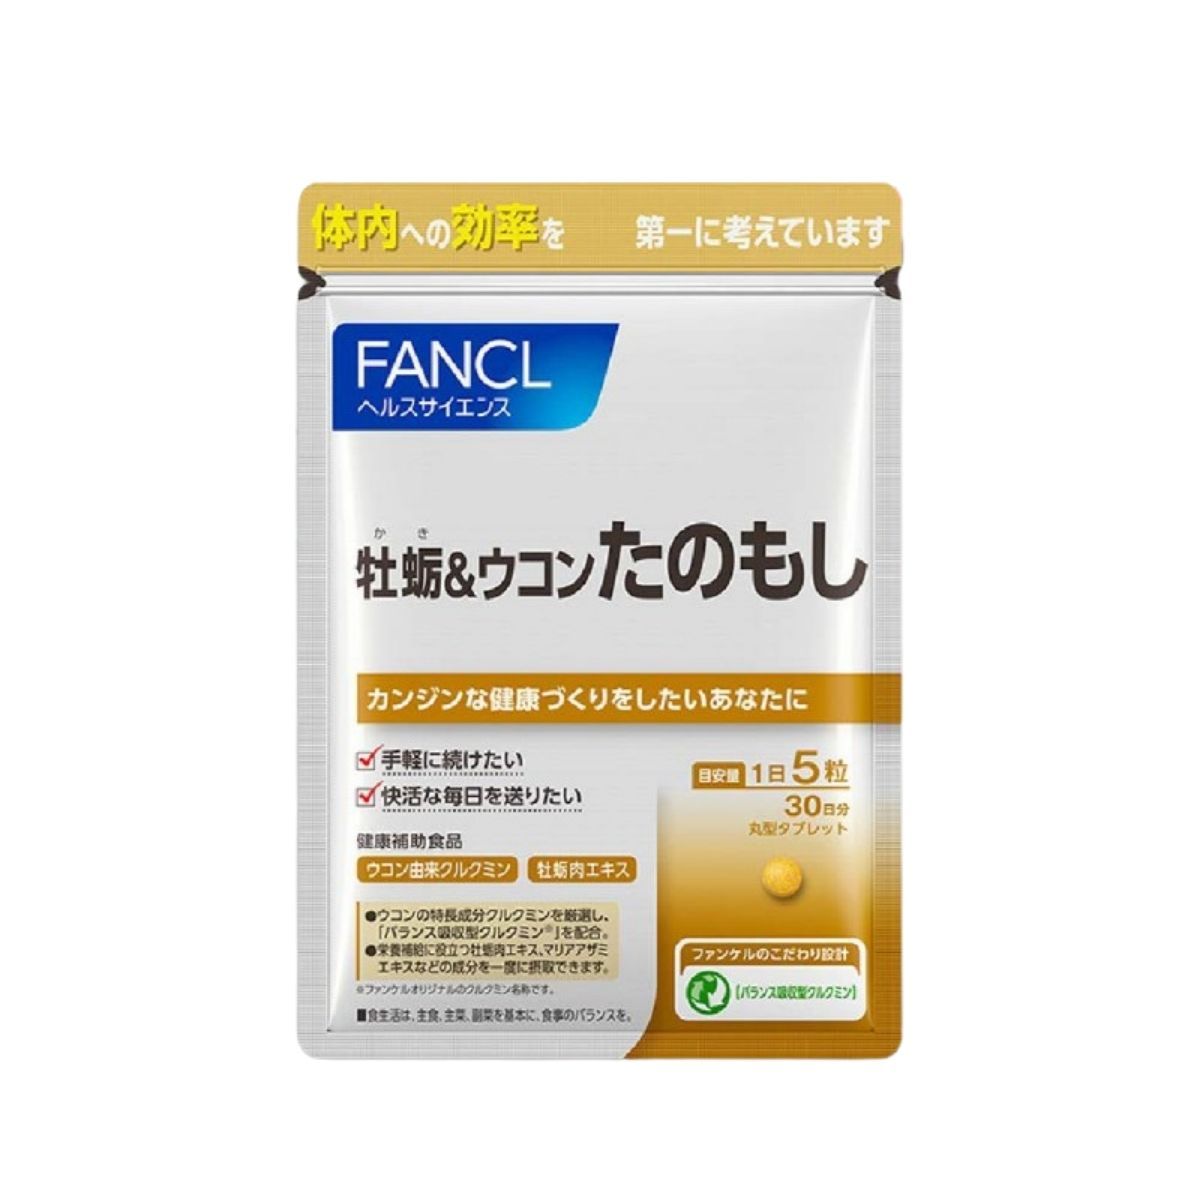 FANCL 牡蠣薑黃素鋅護肝錠 150 粒 男士能力增強 購買